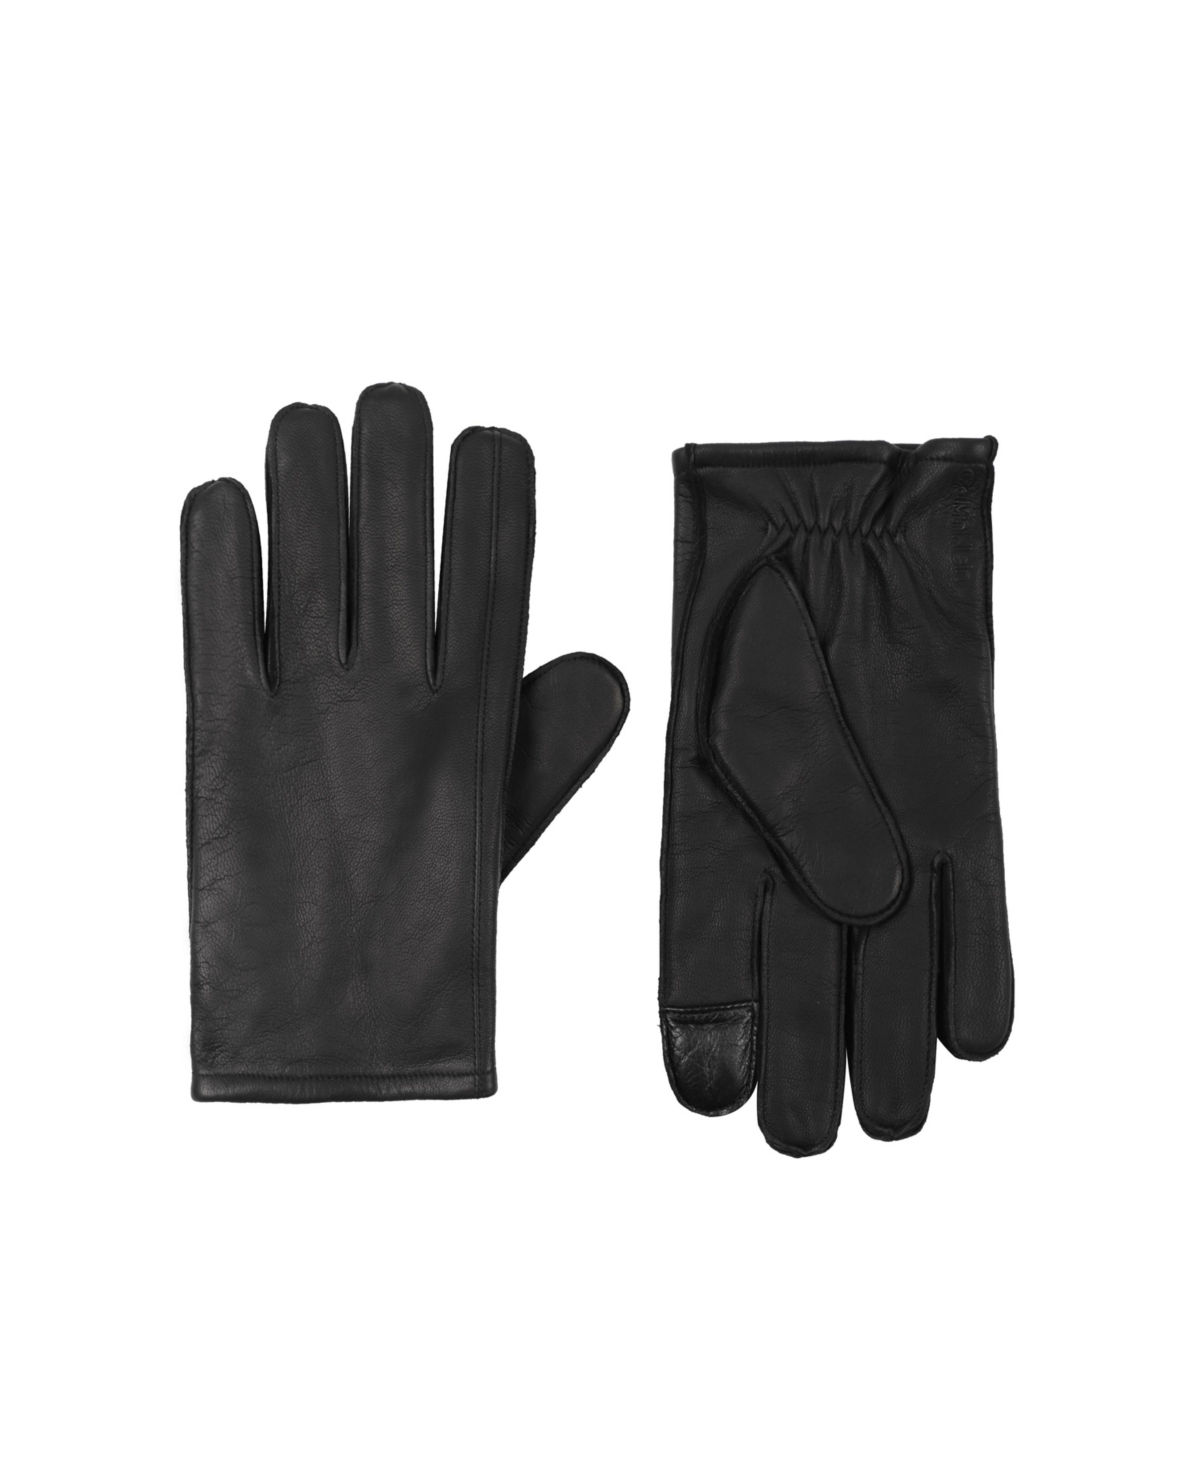 Men's Index Point Gloves - Black